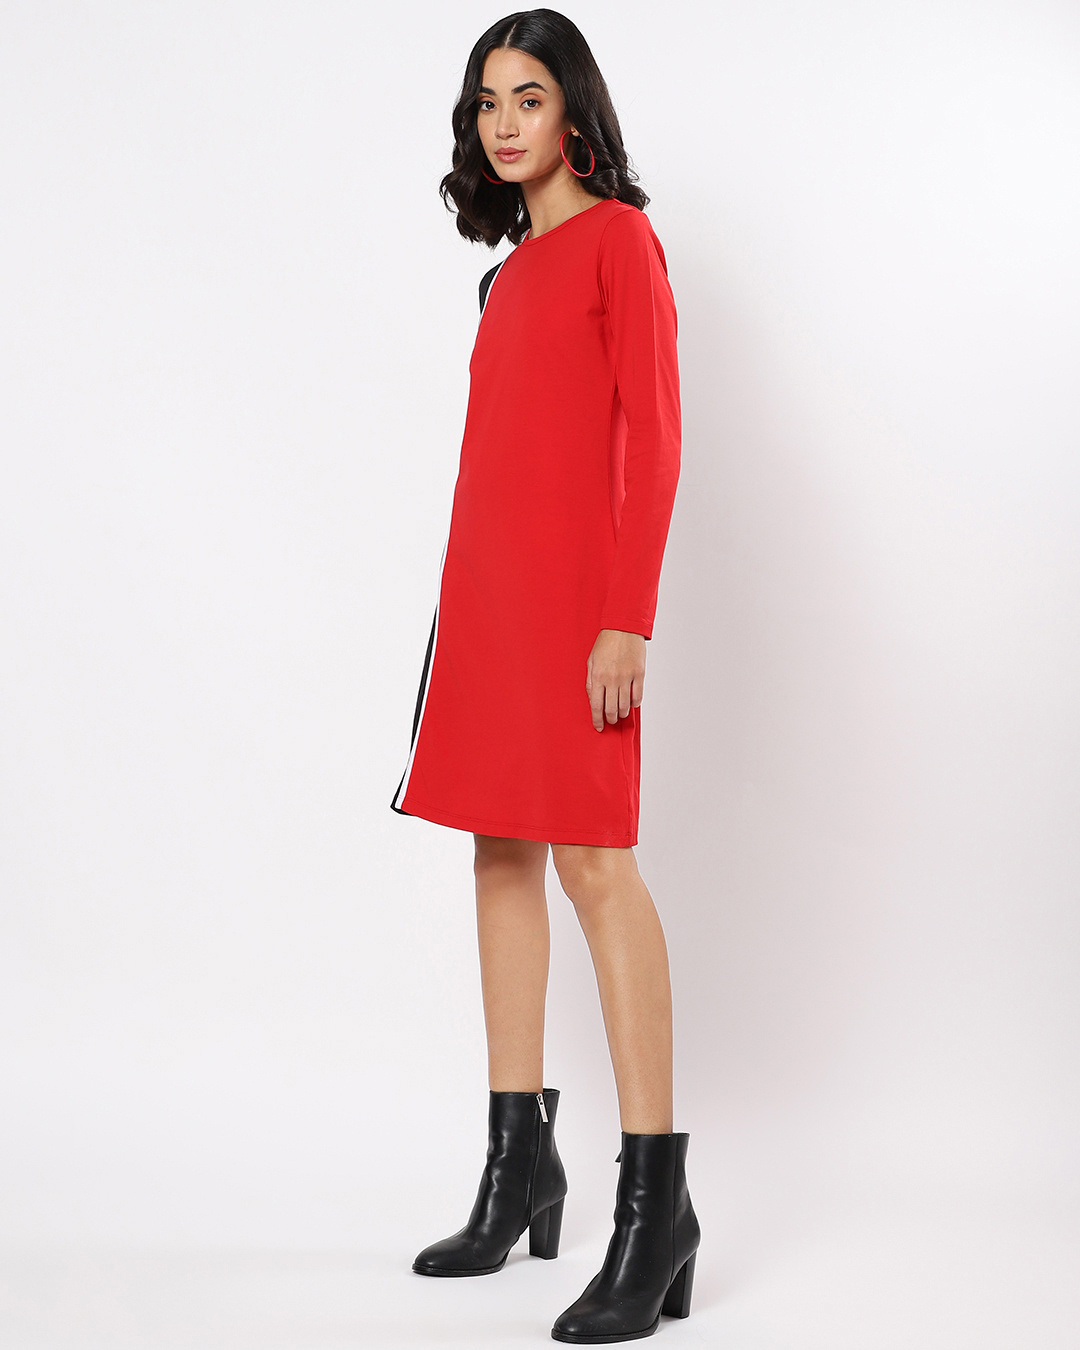 Shop Women's Red & Black Color Block Slim Fit Dress-Back